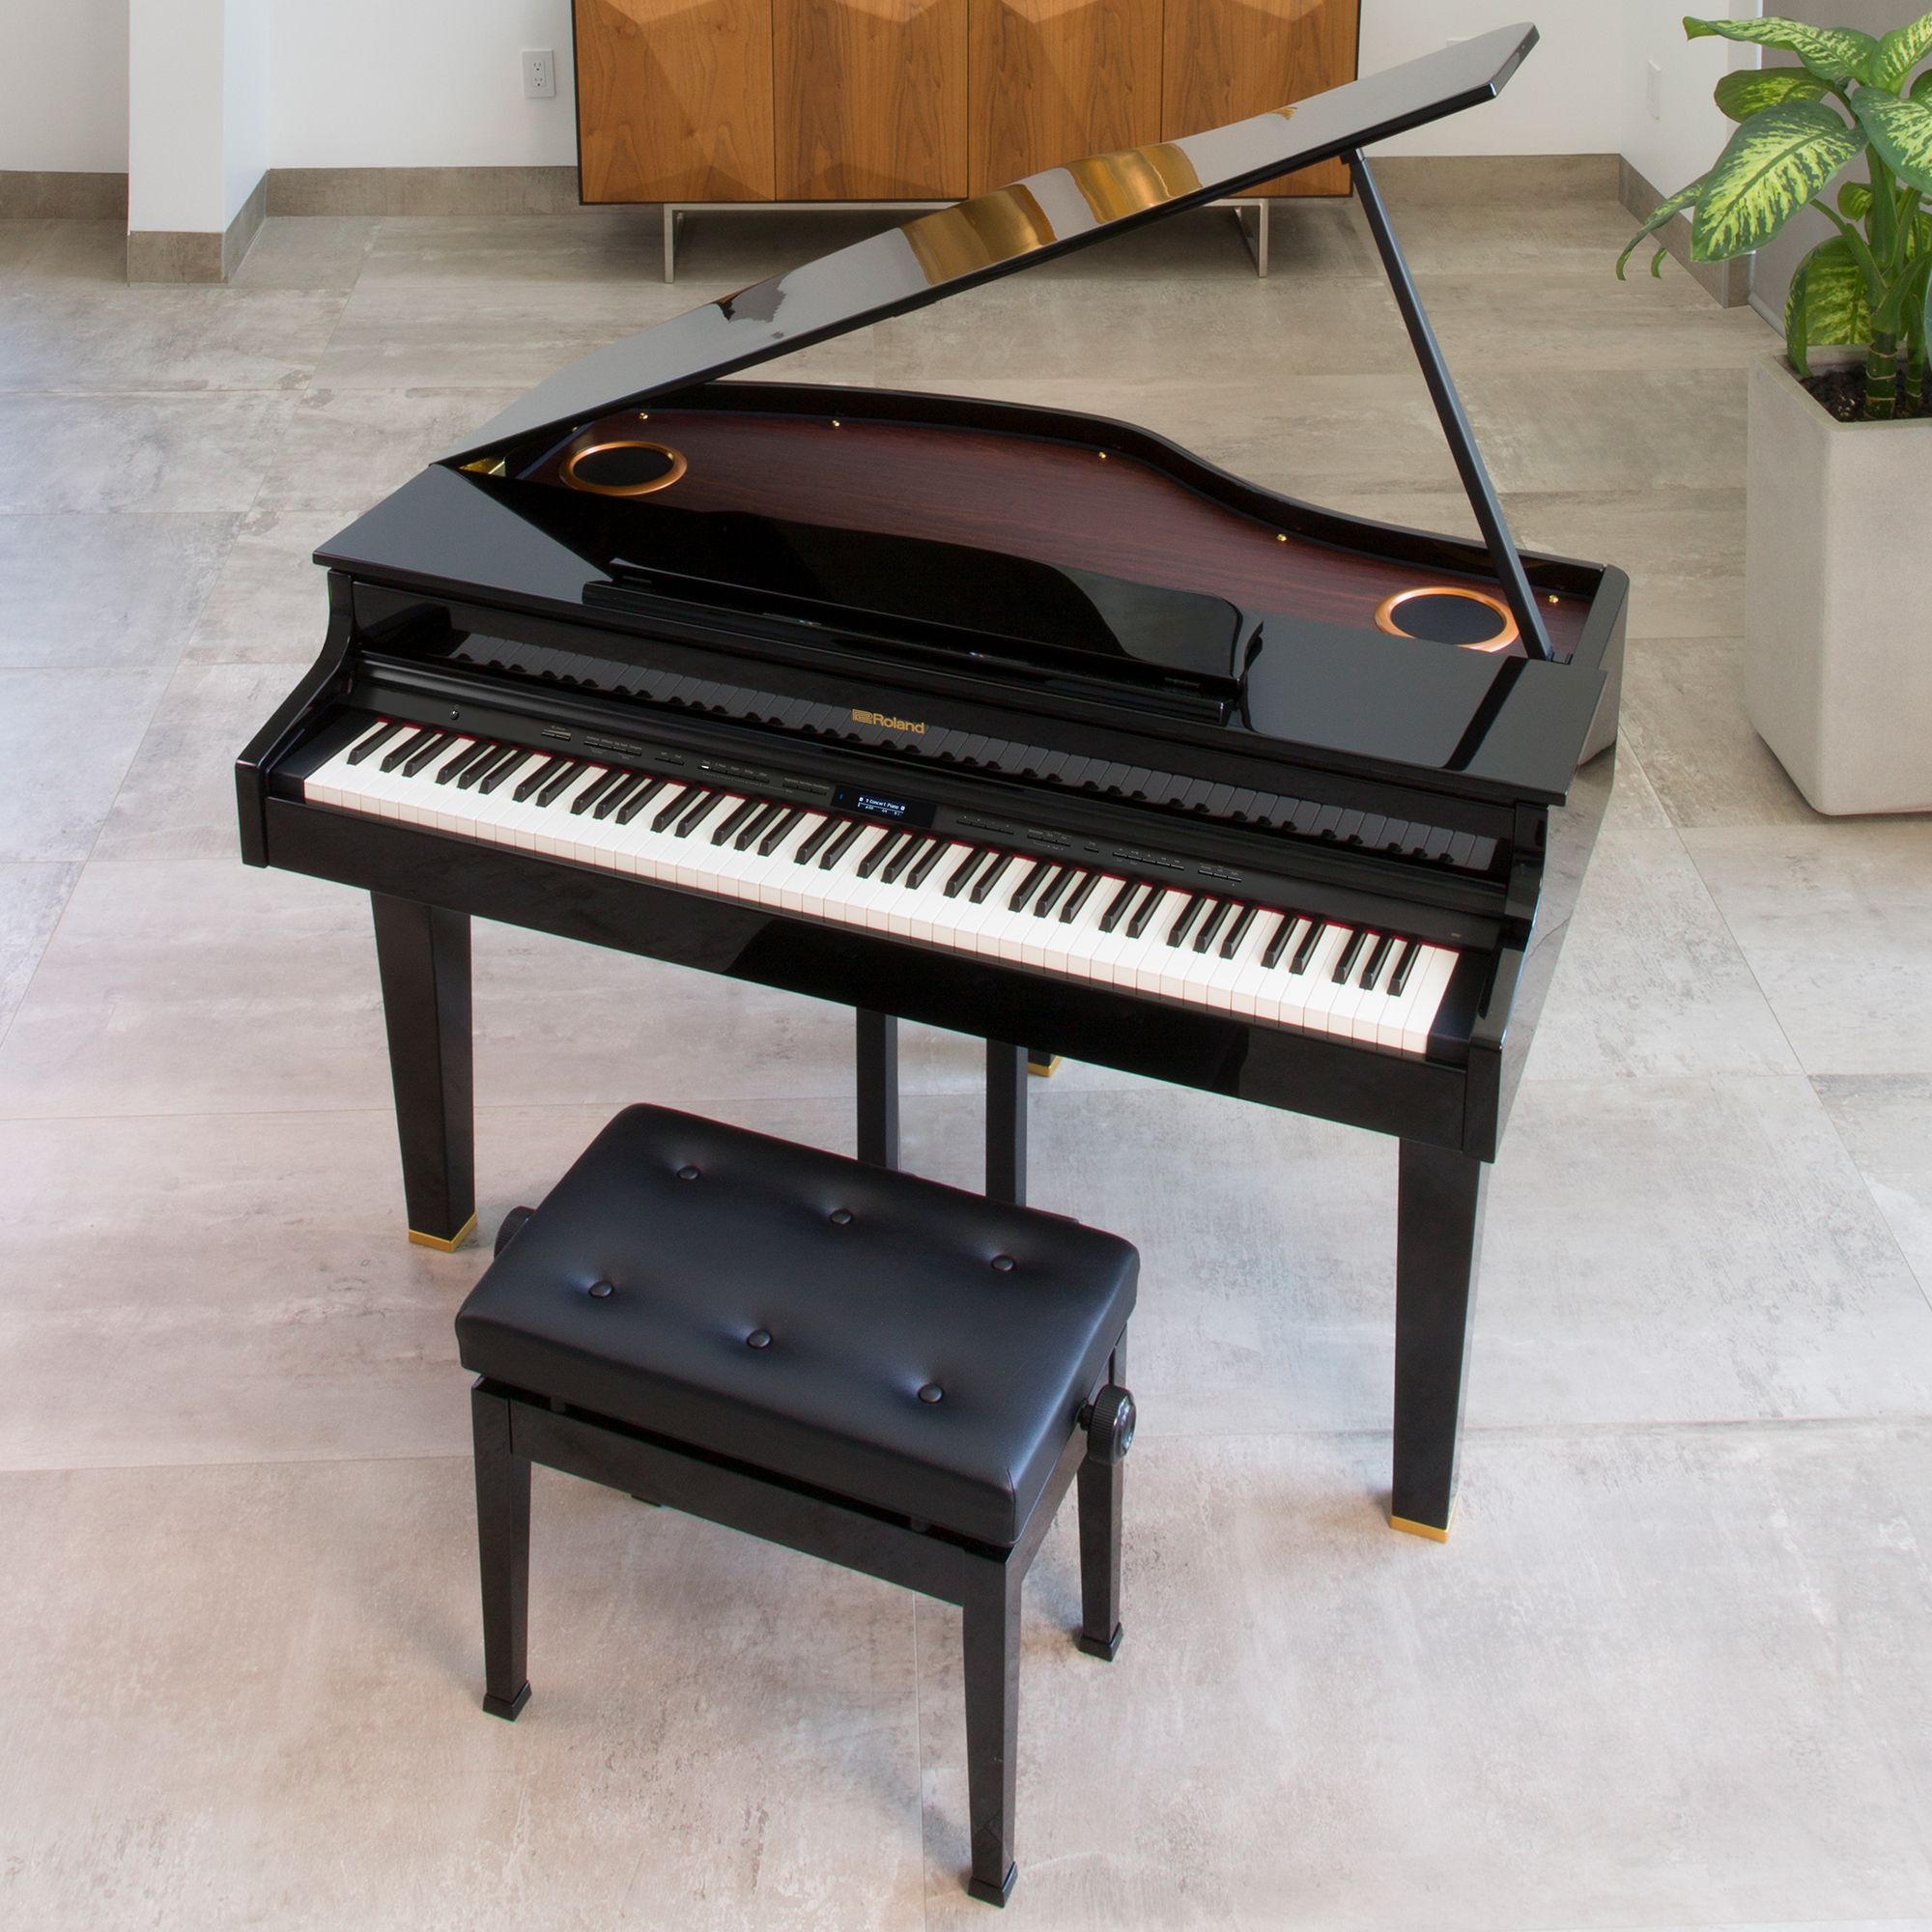 Mini grand piano acoustic